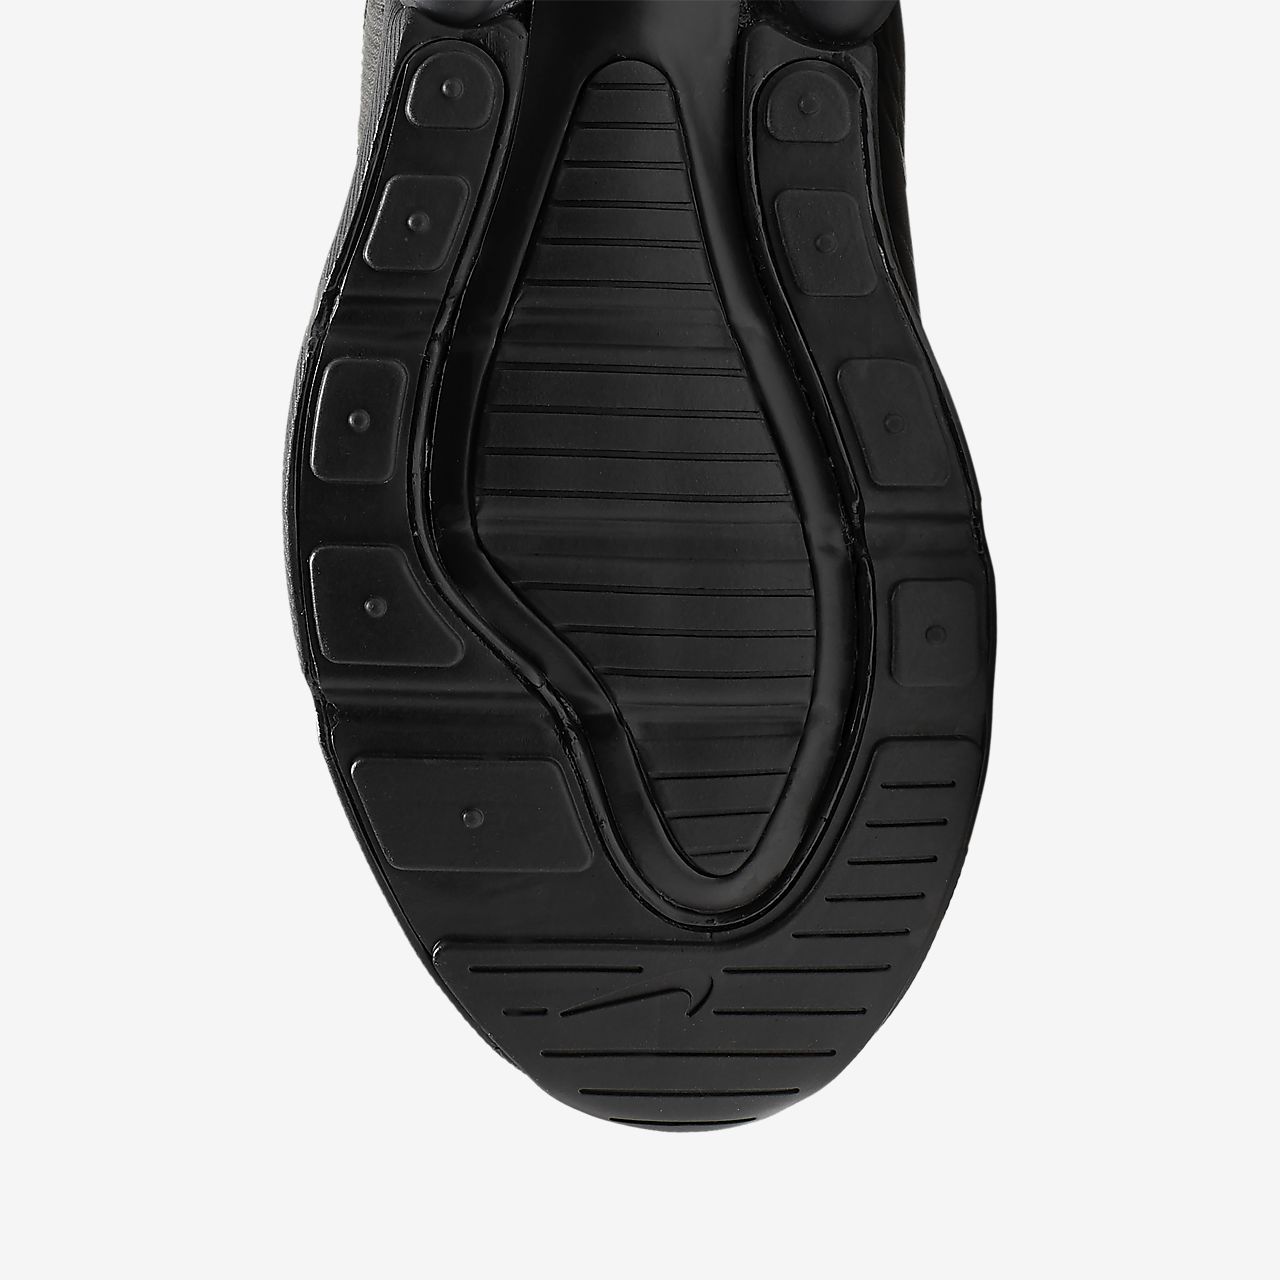 Nike Air Max 270 - Sneakers - Sort/Platin/MørkeGrå | DK-31956